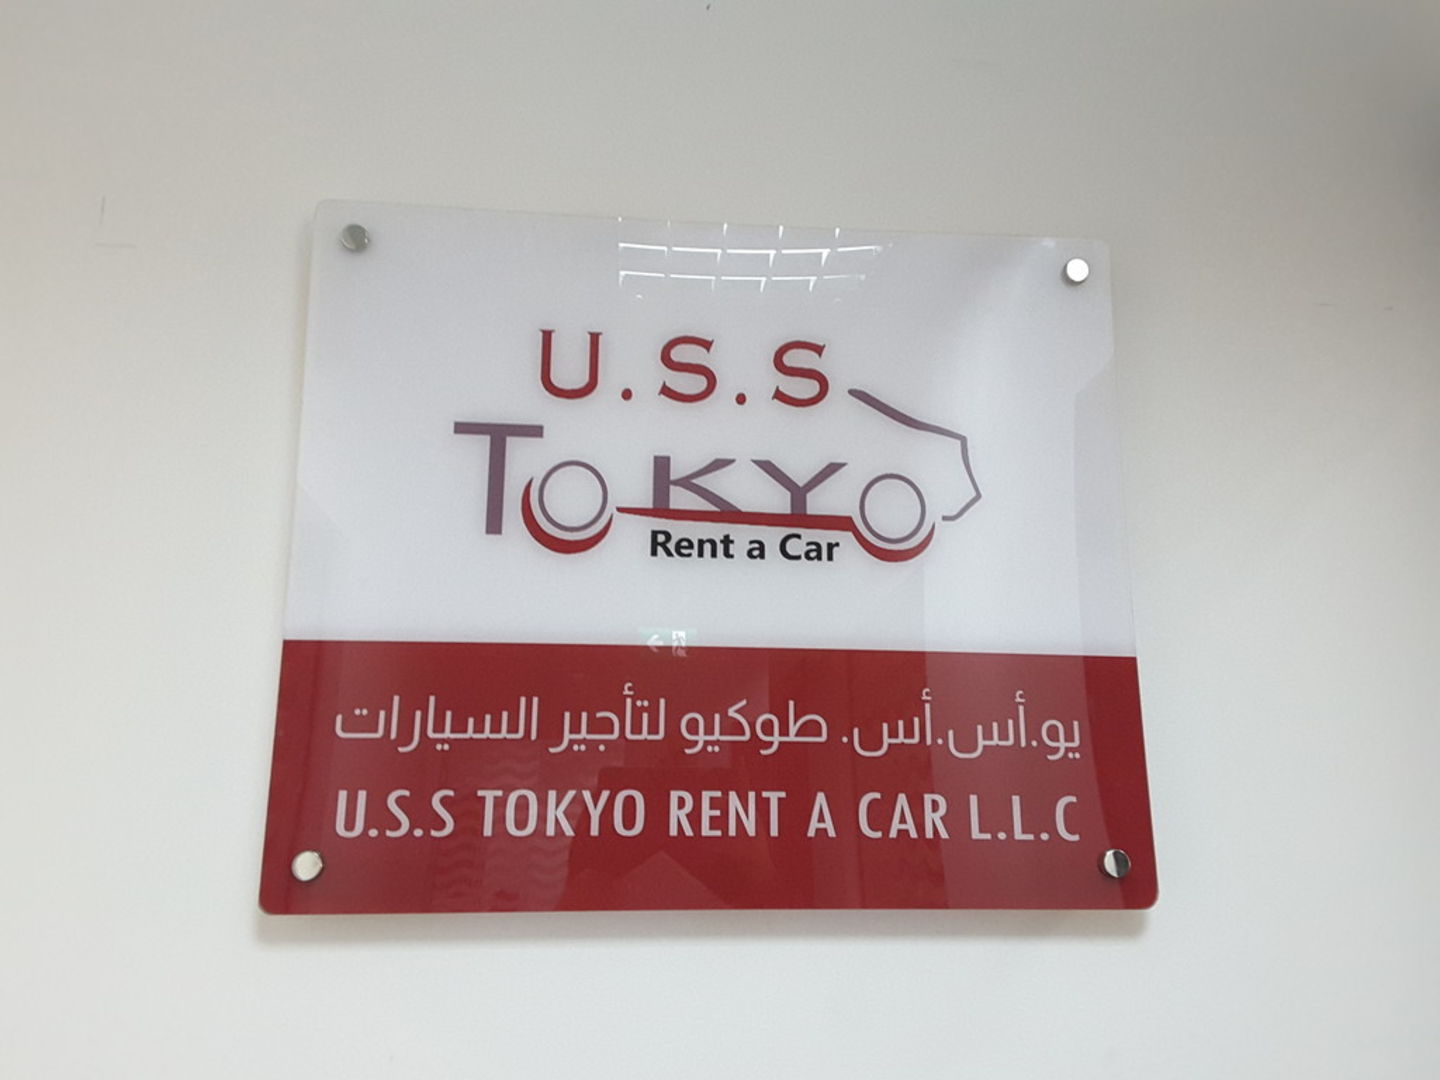 U.S.S Tokyo Rent A Car LLC